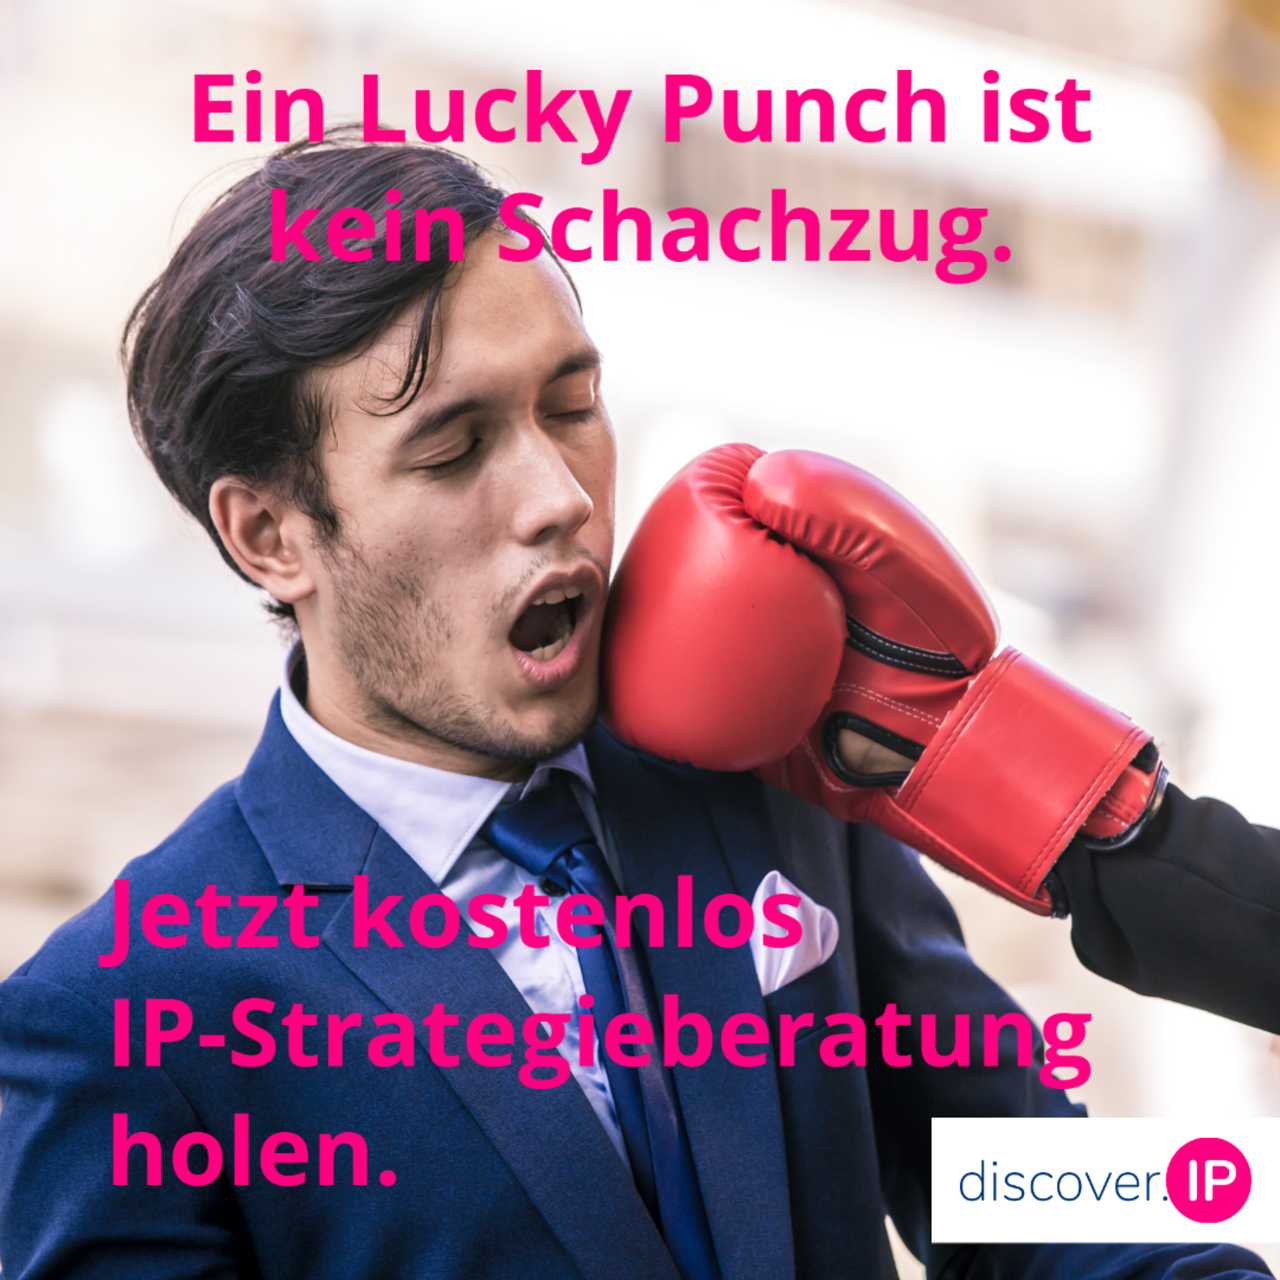 Ein Lucky Punch ist kein Schachzug. Jetzt kostenlos IP-Strategieberatung holen.